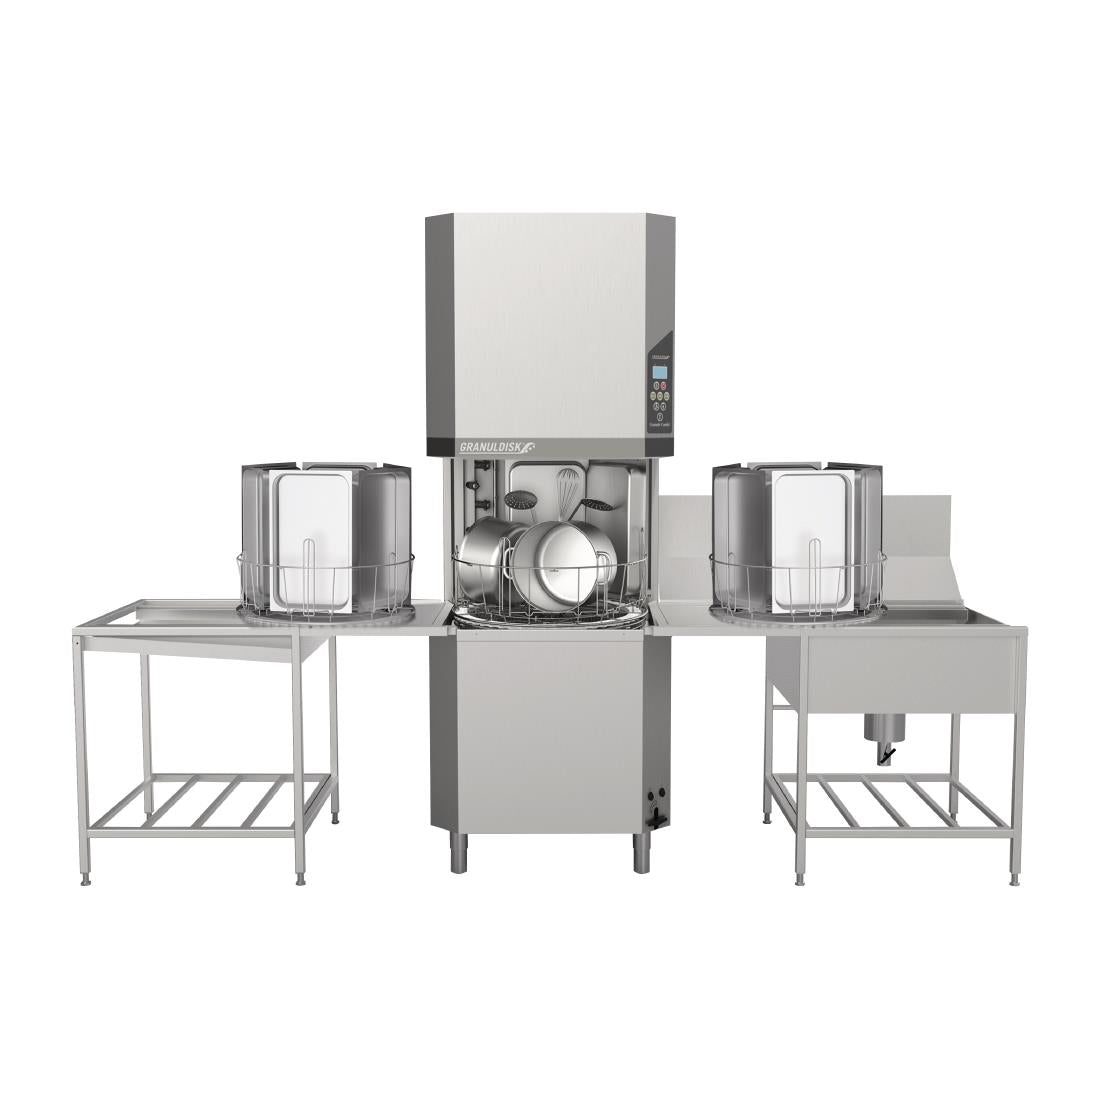 FD009 Granuldisk Granule Gastro Pass Through Utensil Washer 20717 JD Catering Equipment Solutions Ltd